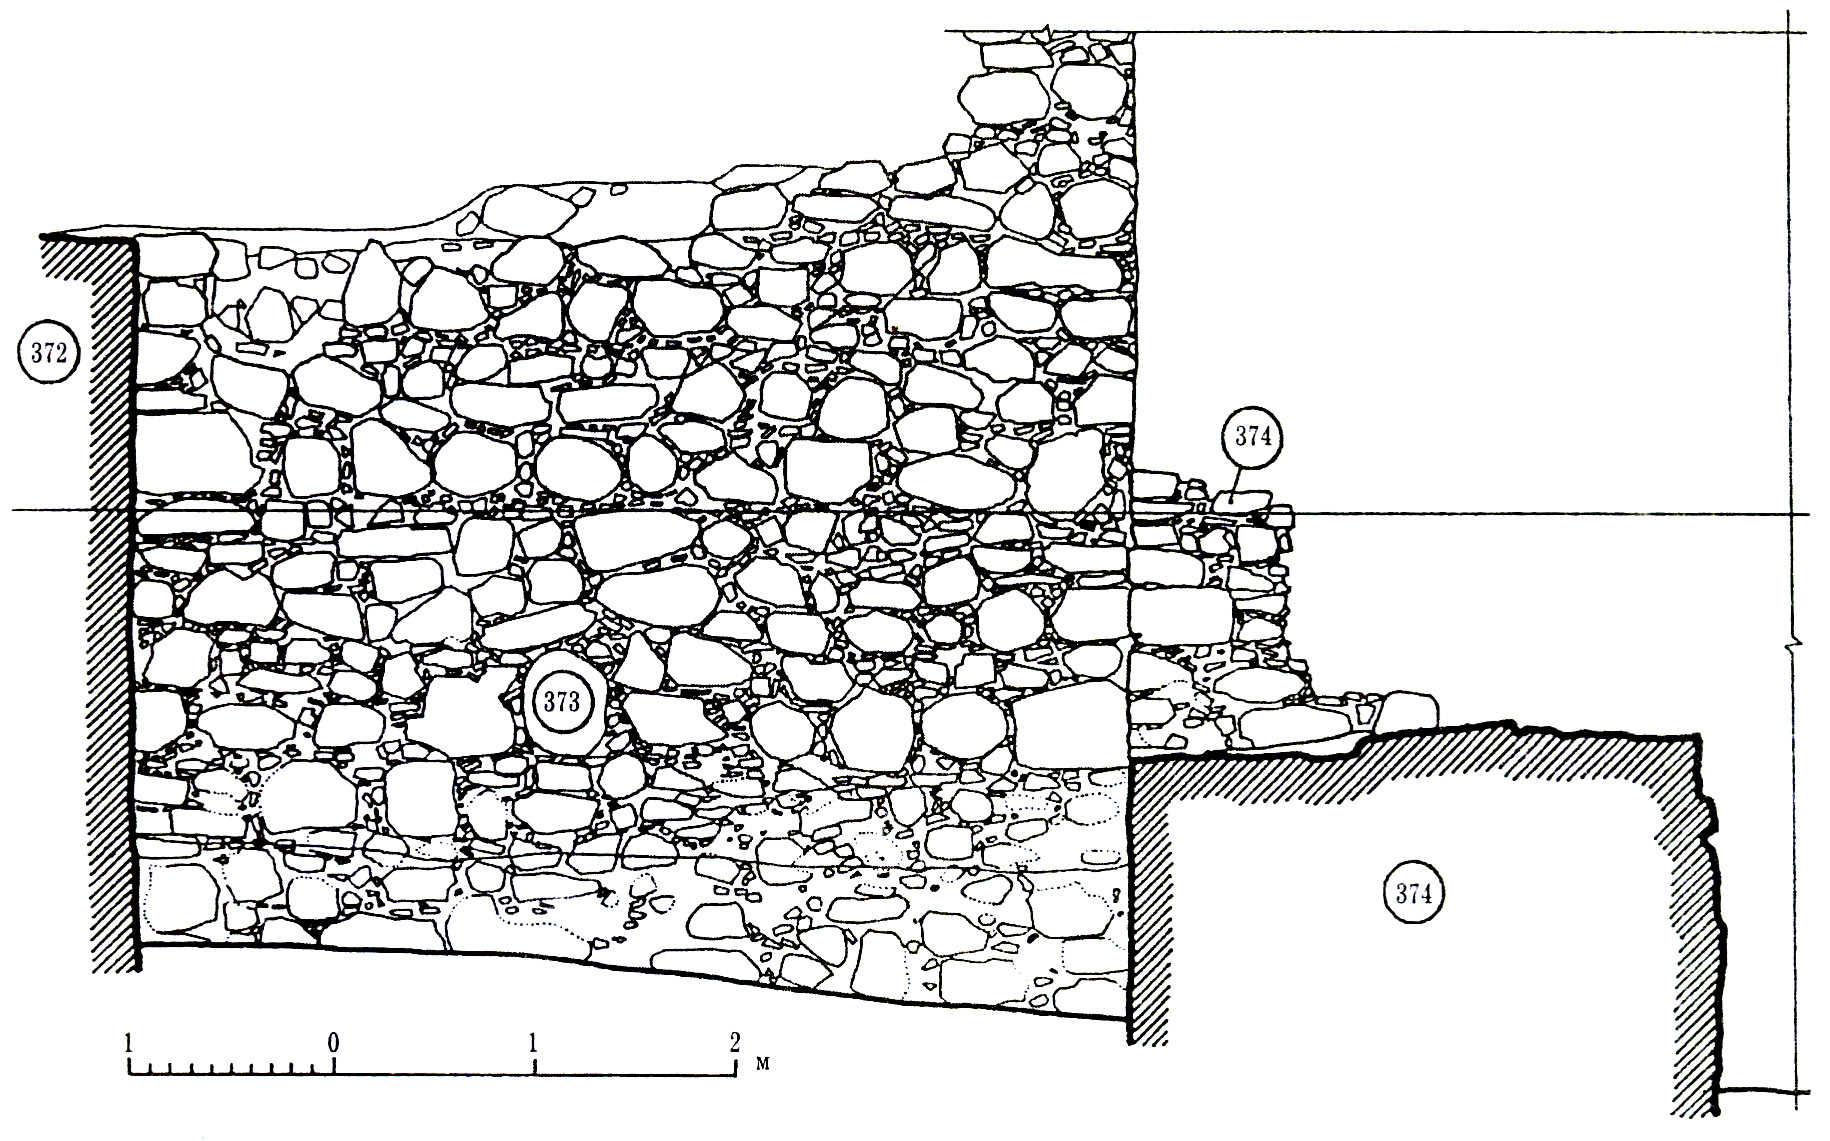 Рис. 5. Северо-восточная стена (кл. 373) башни Орта-Куле. Вид с юго-запада, совмещенный с поперечным разрезом строения по оси амбразуры.